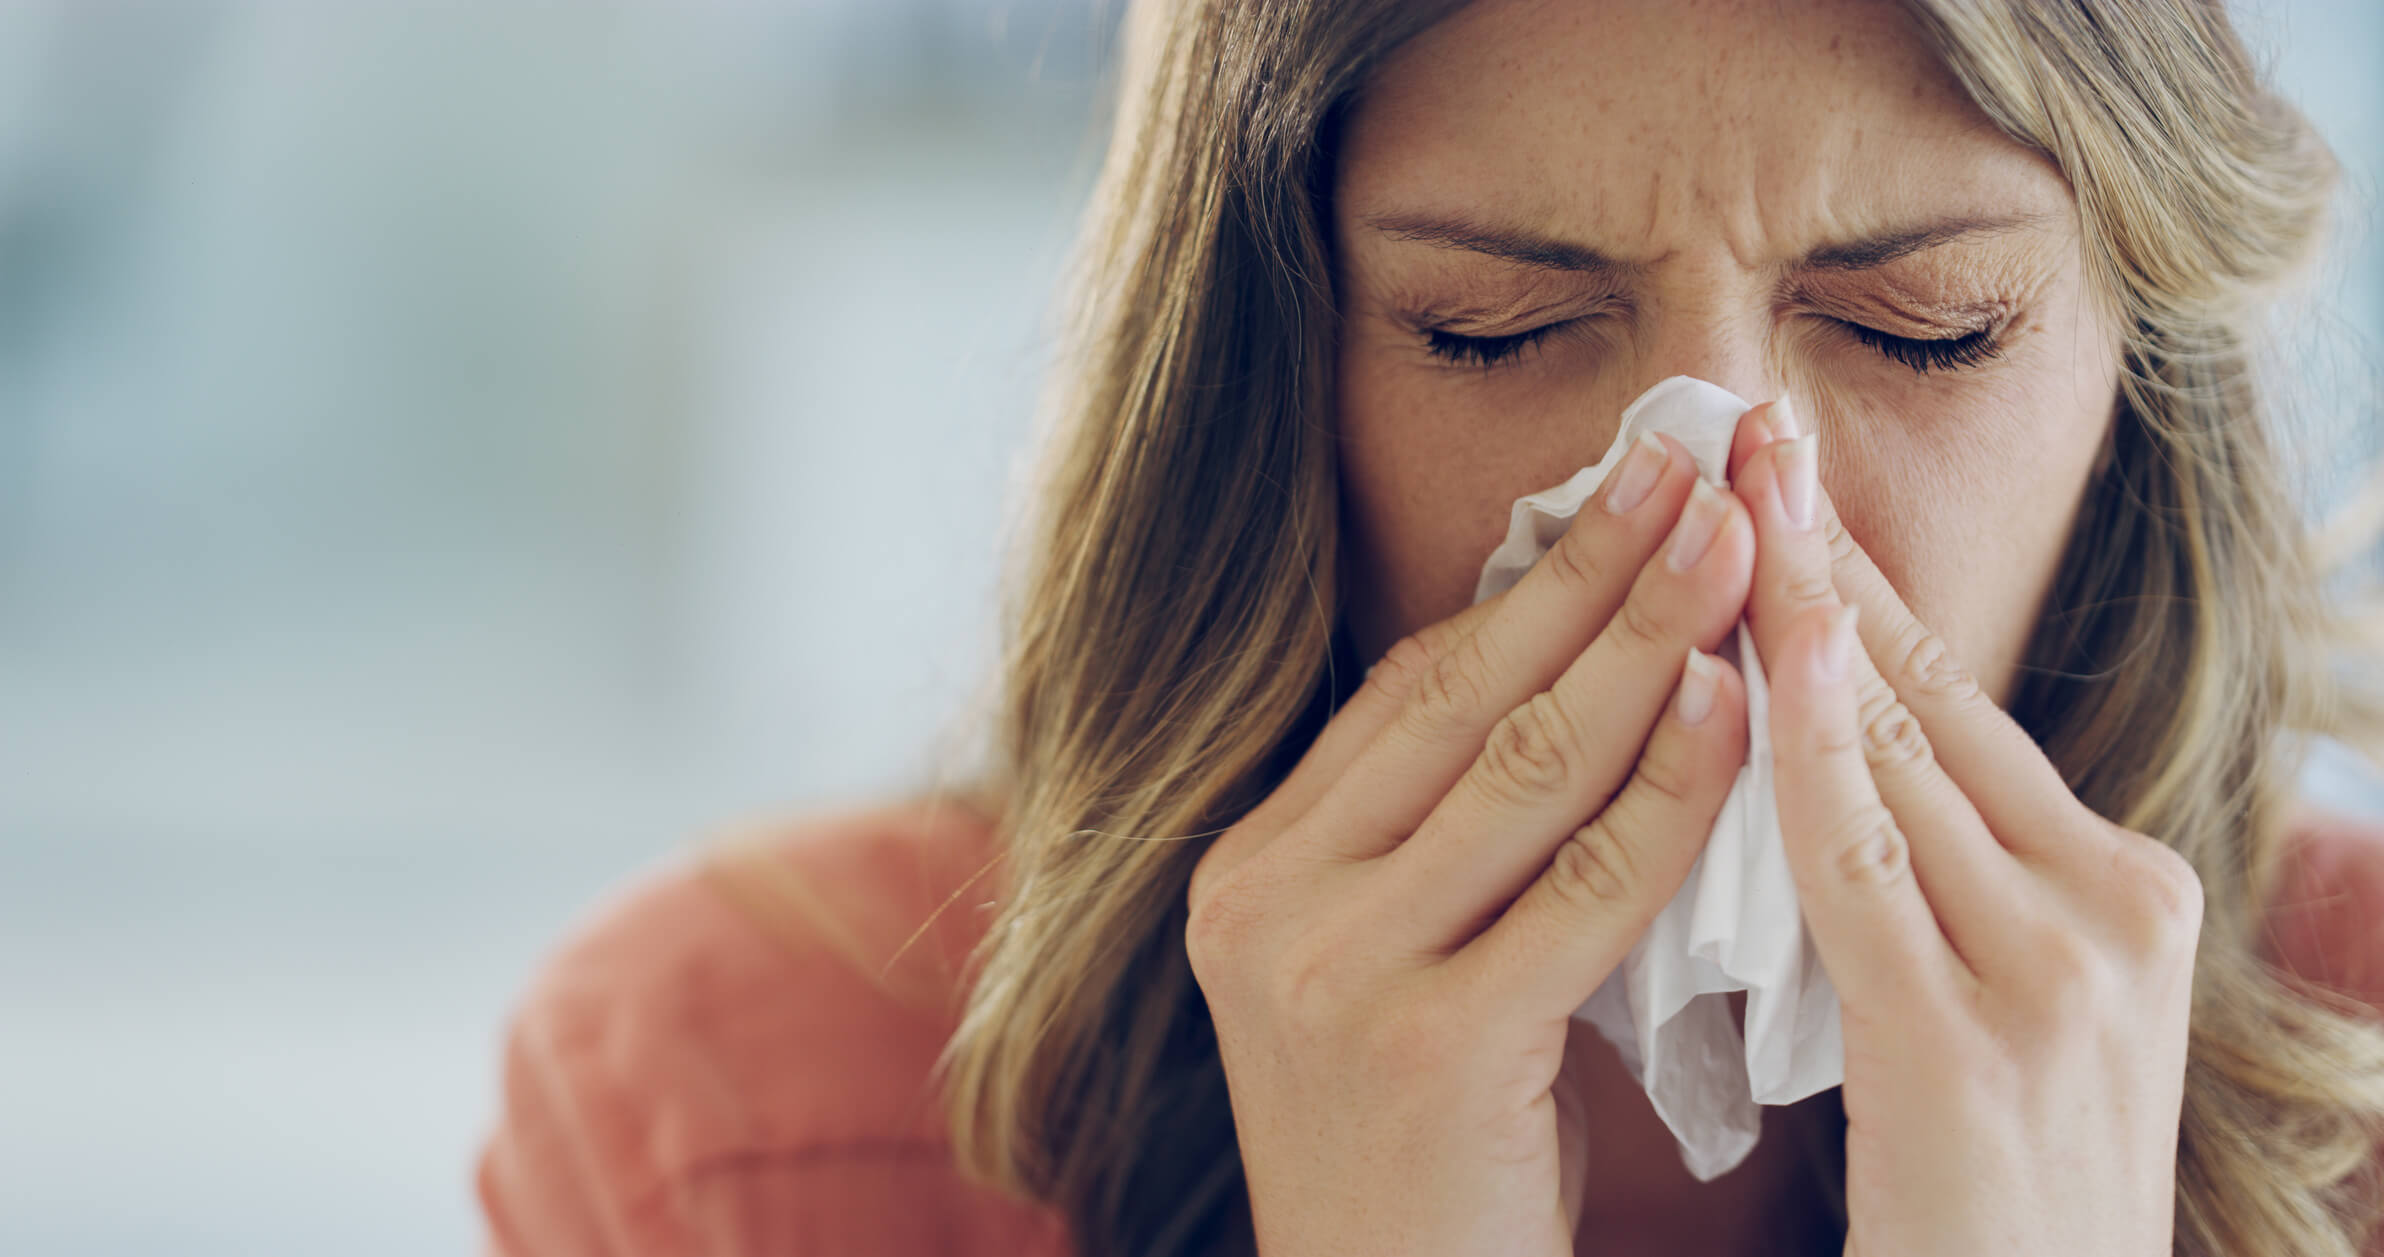 Un médecin dévoile comment se laver le nez pour éviter les rhumes